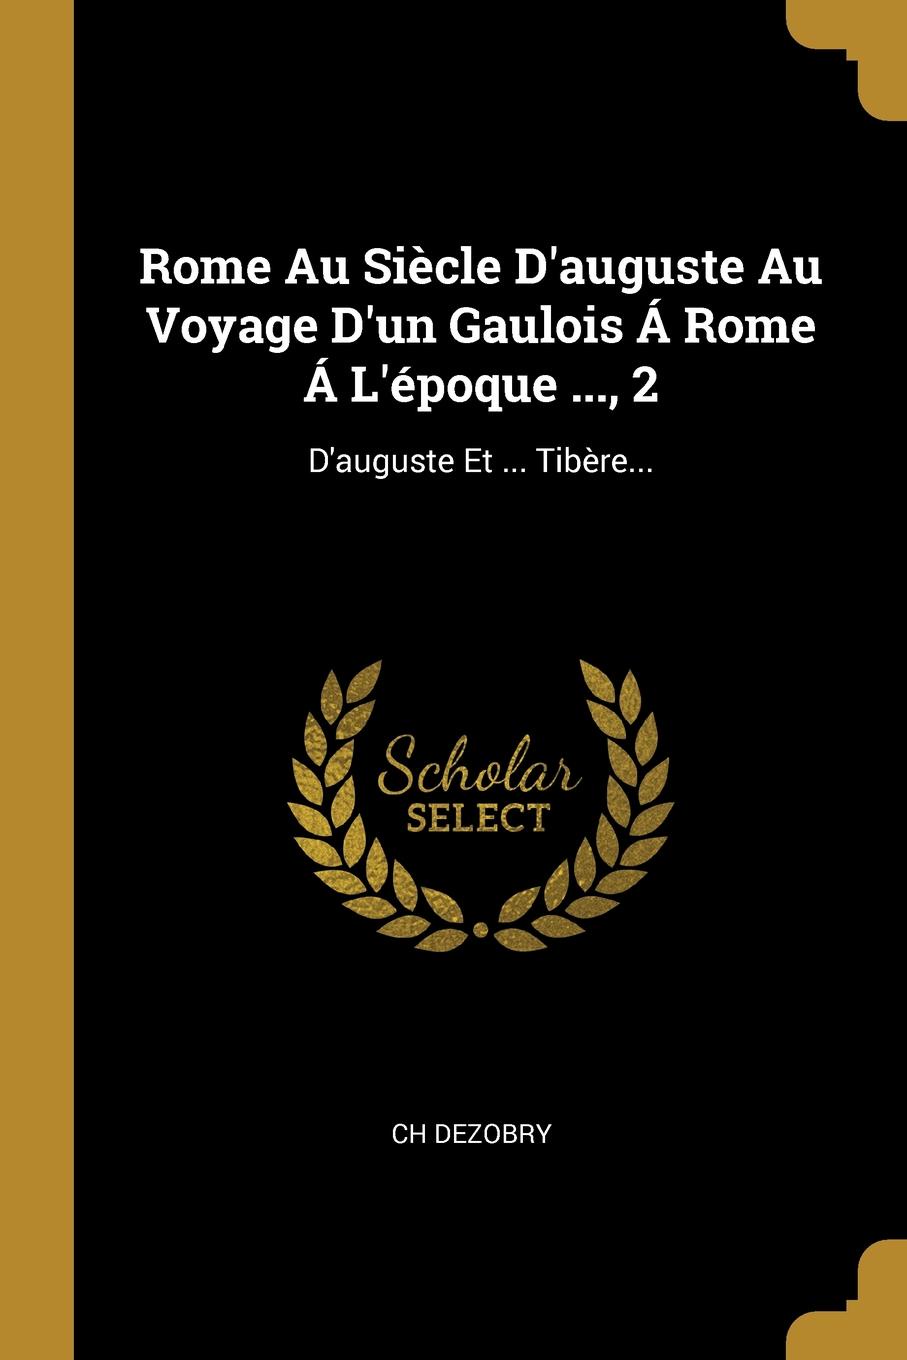 Rome Au Siecle D.auguste Au Voyage D.un Gaulois A Rome A L.epoque ..., 2. D.auguste Et ... Tibere...